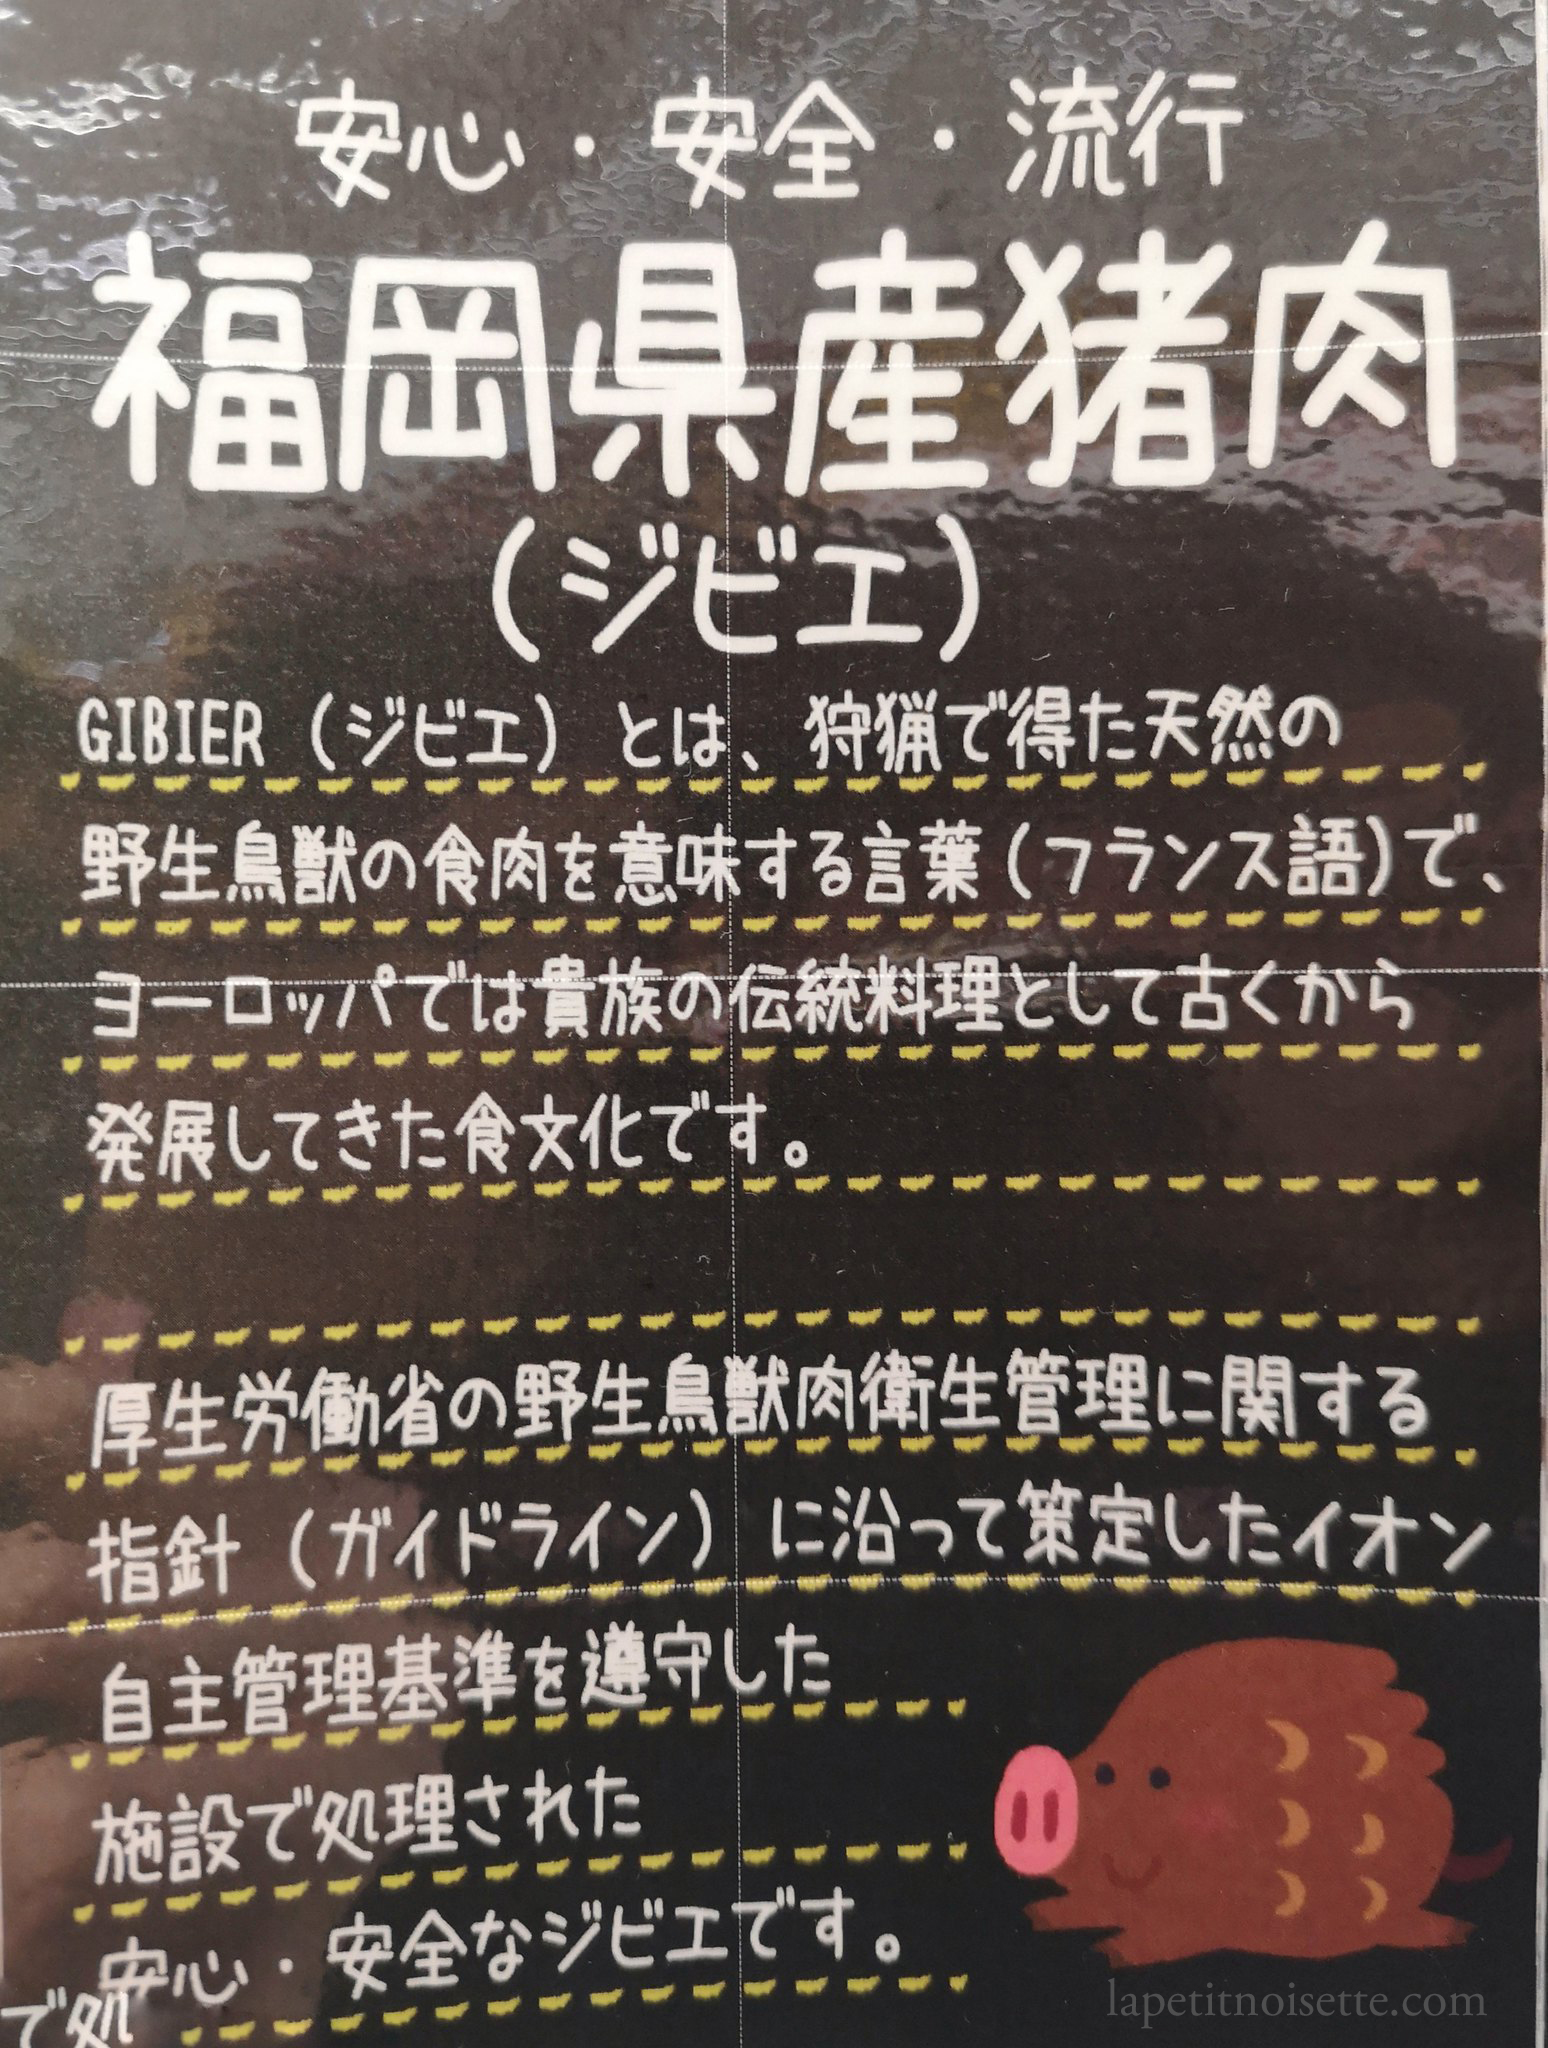 Advertisement in Fukuoka for wild boar meat.